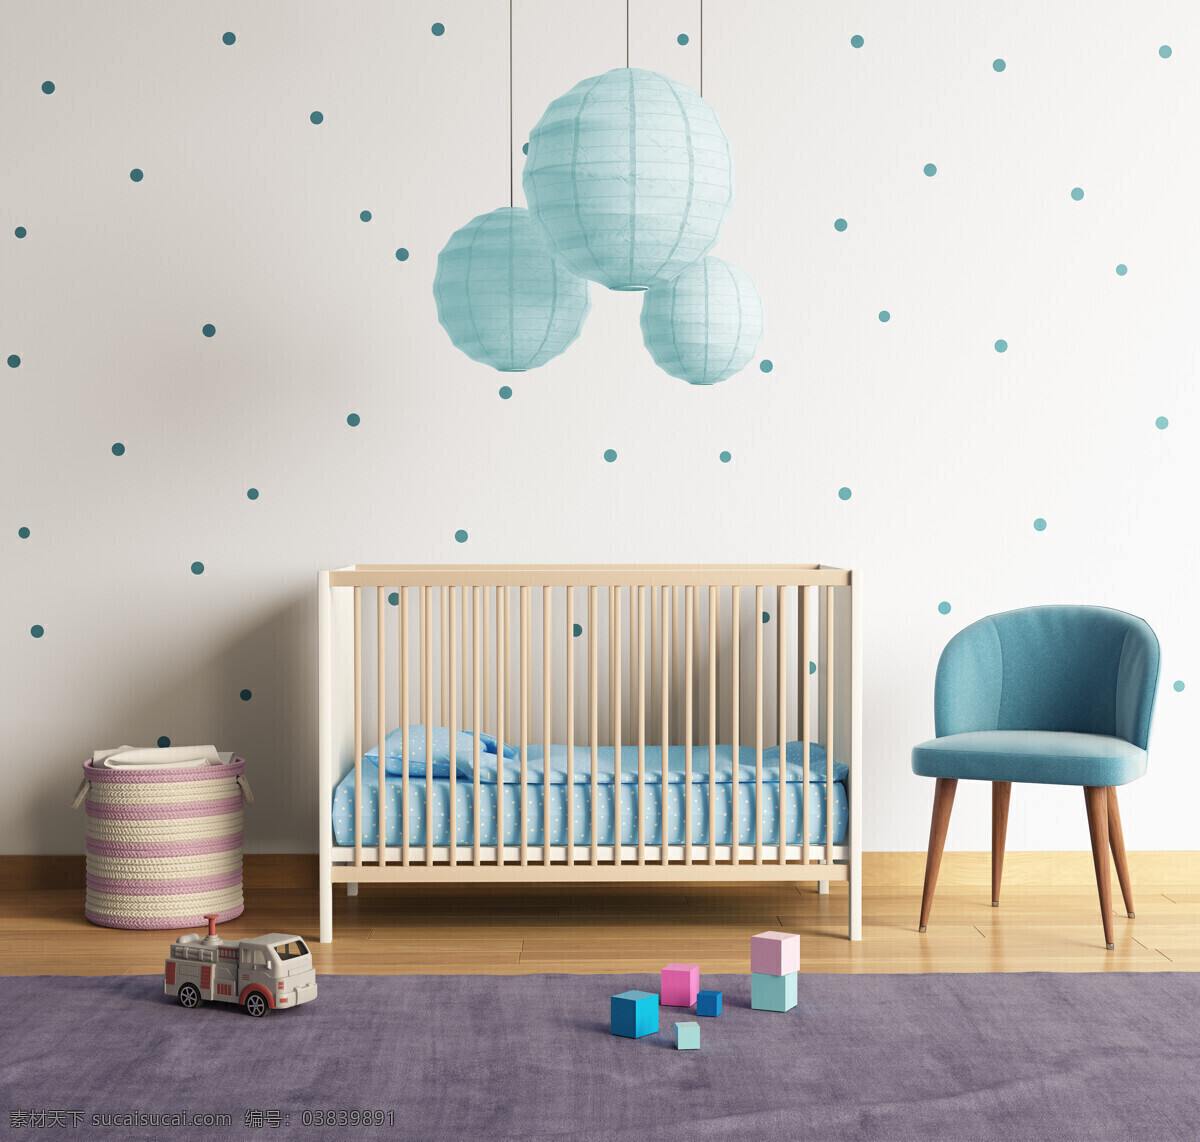 儿童卧室 唯美 炫酷 浪漫 欧式 简洁 简约 卧室 可爱 小床 白色系 气球灯 蓝色沙发 环境设计 室内设计